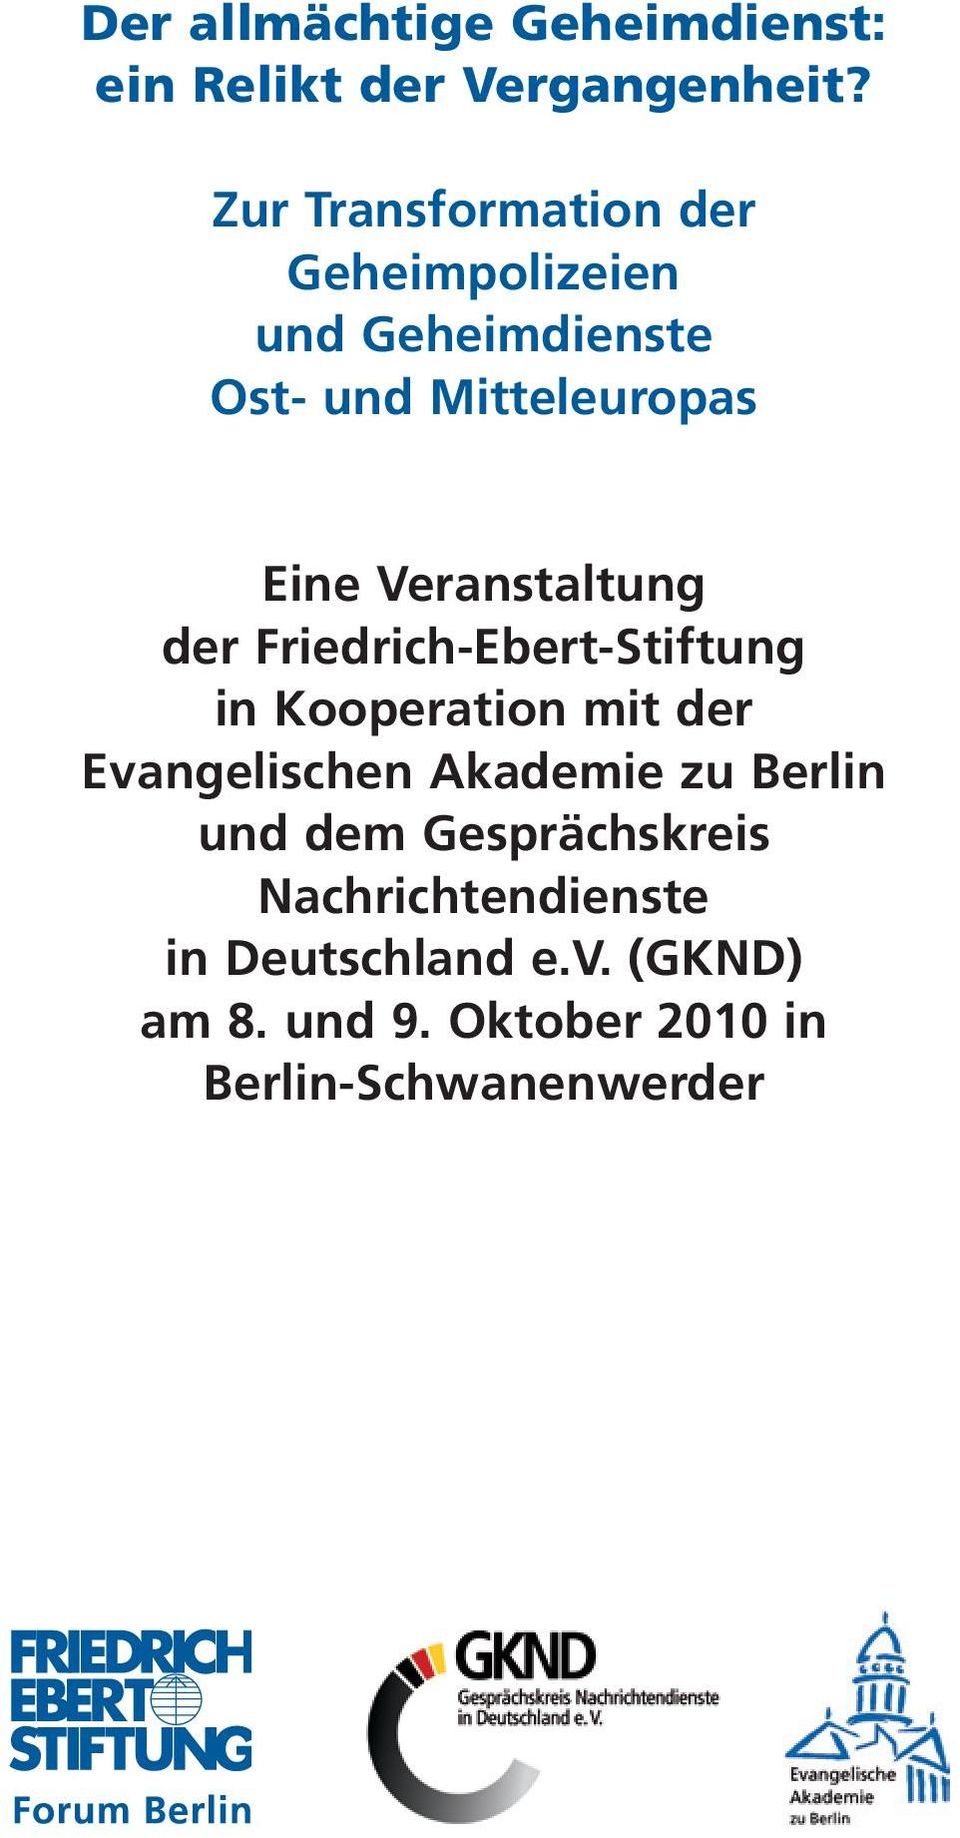 Veranstaltung der Friedrich-Ebert-Stiftung in Kooperation mit der Evangelischen Akademie